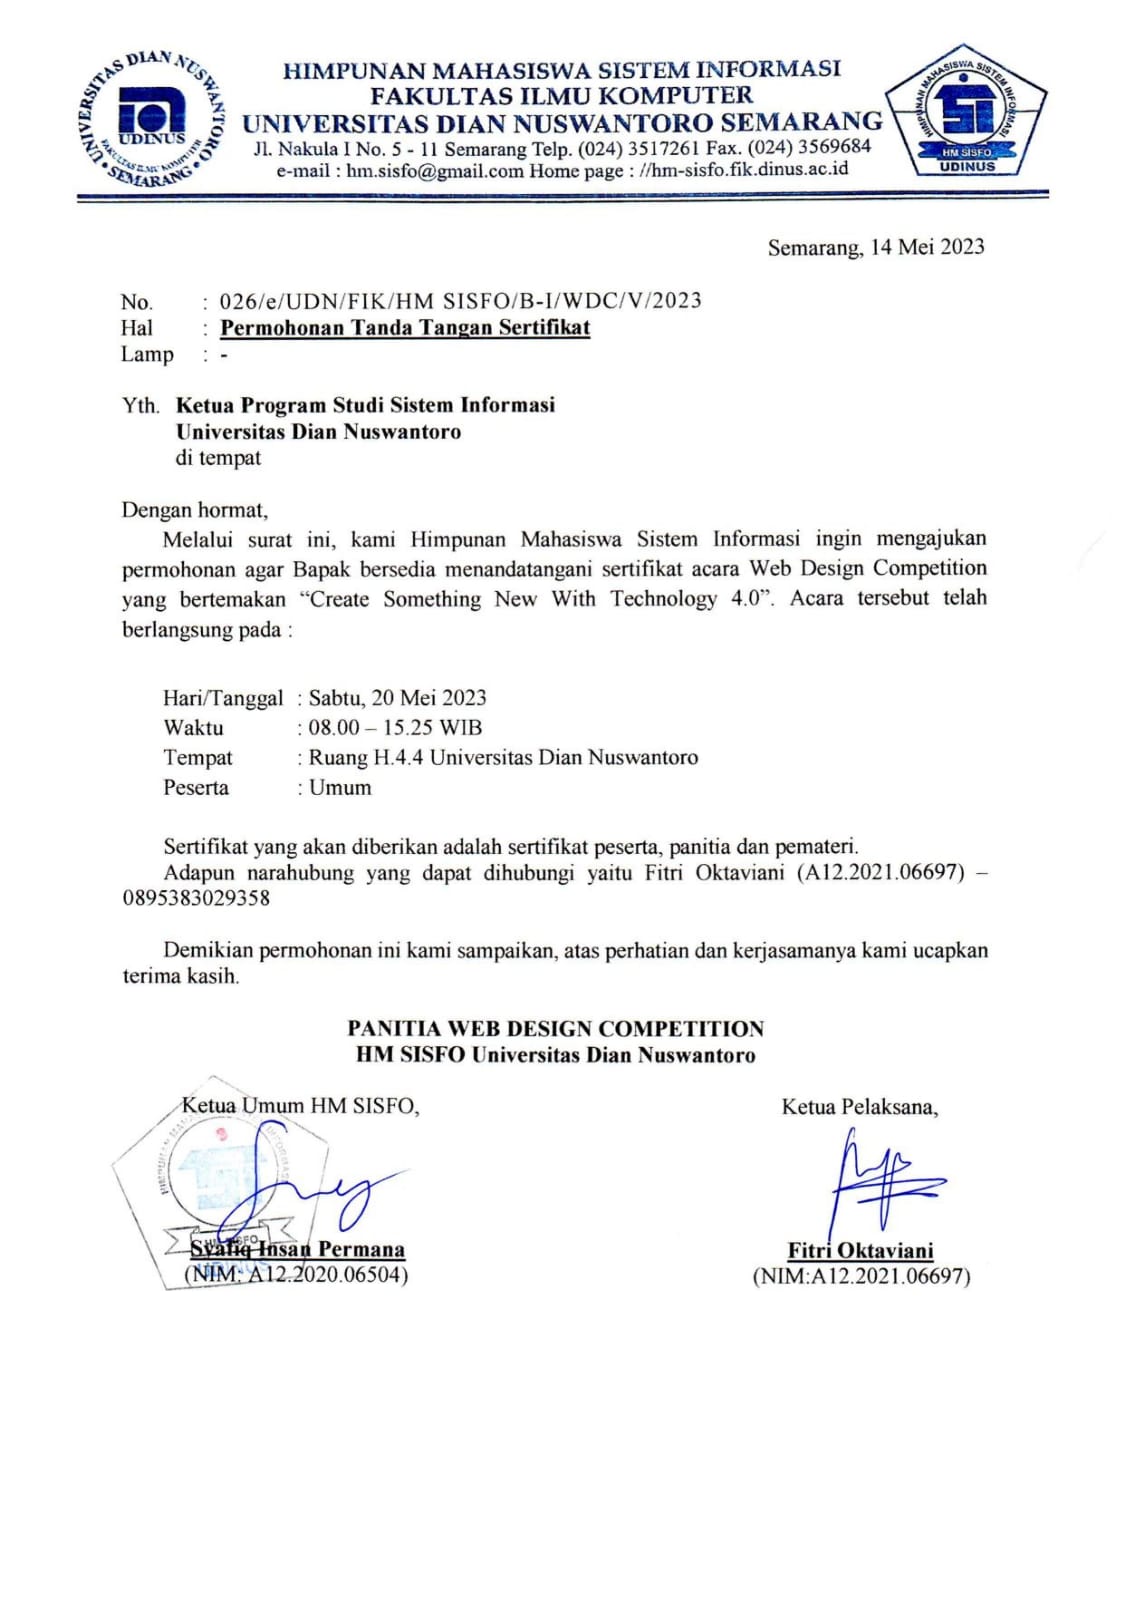 Surat Permohonan Tanda Tangan Sertifikat Ketua Program Studi Sistem Informasi Universitas Dian Nuswantoro